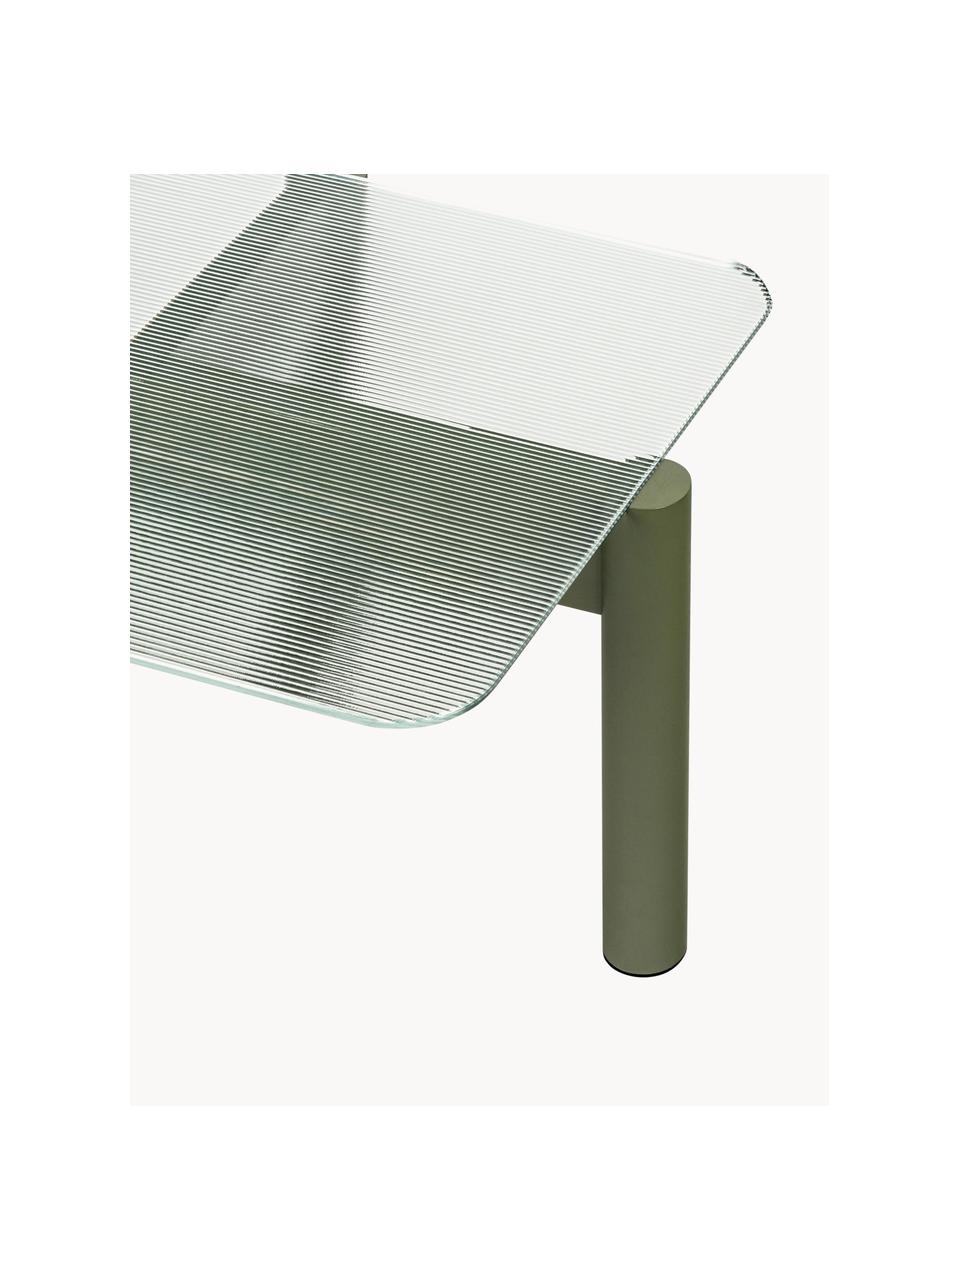 Couchtisch Kob aus Buchenholz mit Glasplatte, Tischplatte: Glas, Beine: Buchenholz, Transparent, Olivgrün, B 110 x T 41 cm